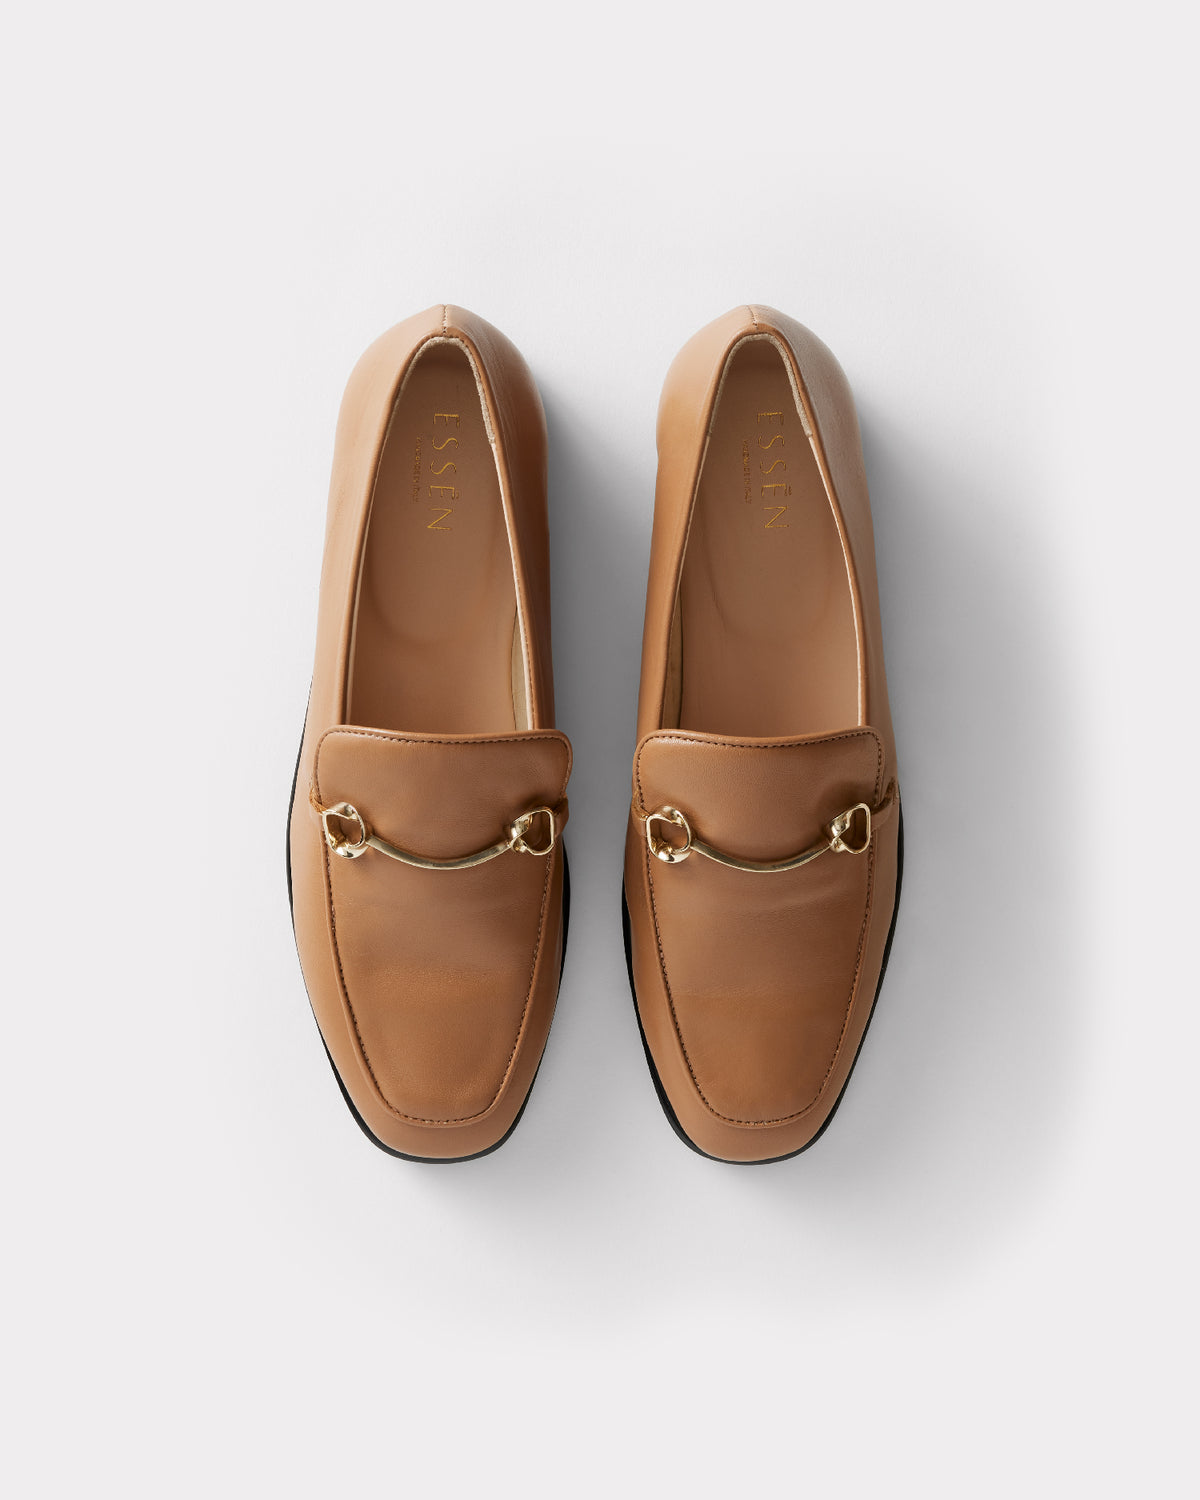 slow fashion shoe brand tan leather moccasins